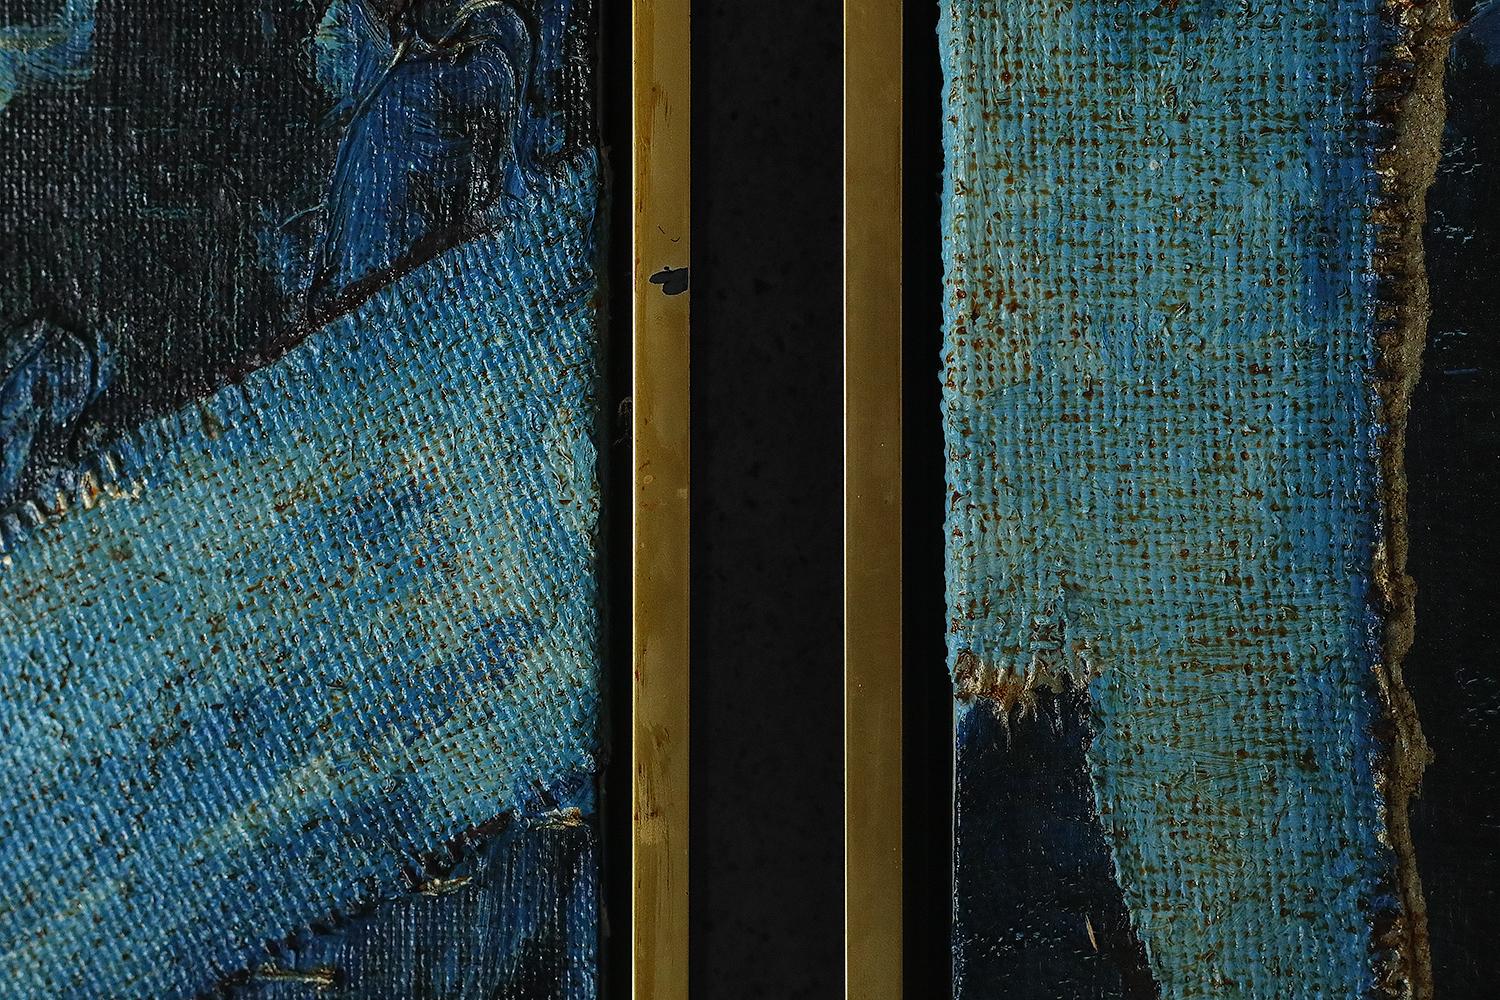 Roald Ditmer, Composition abstraite
Huile sur toile
Œuvre signée par l'artiste
Dimensions du travail 31/31
Œuvre encadrée

Roald Ditmer est né en 1959. C'est un artiste danois spécialisé dans les compositions abstraites à l'huile.

Ouvrage en état